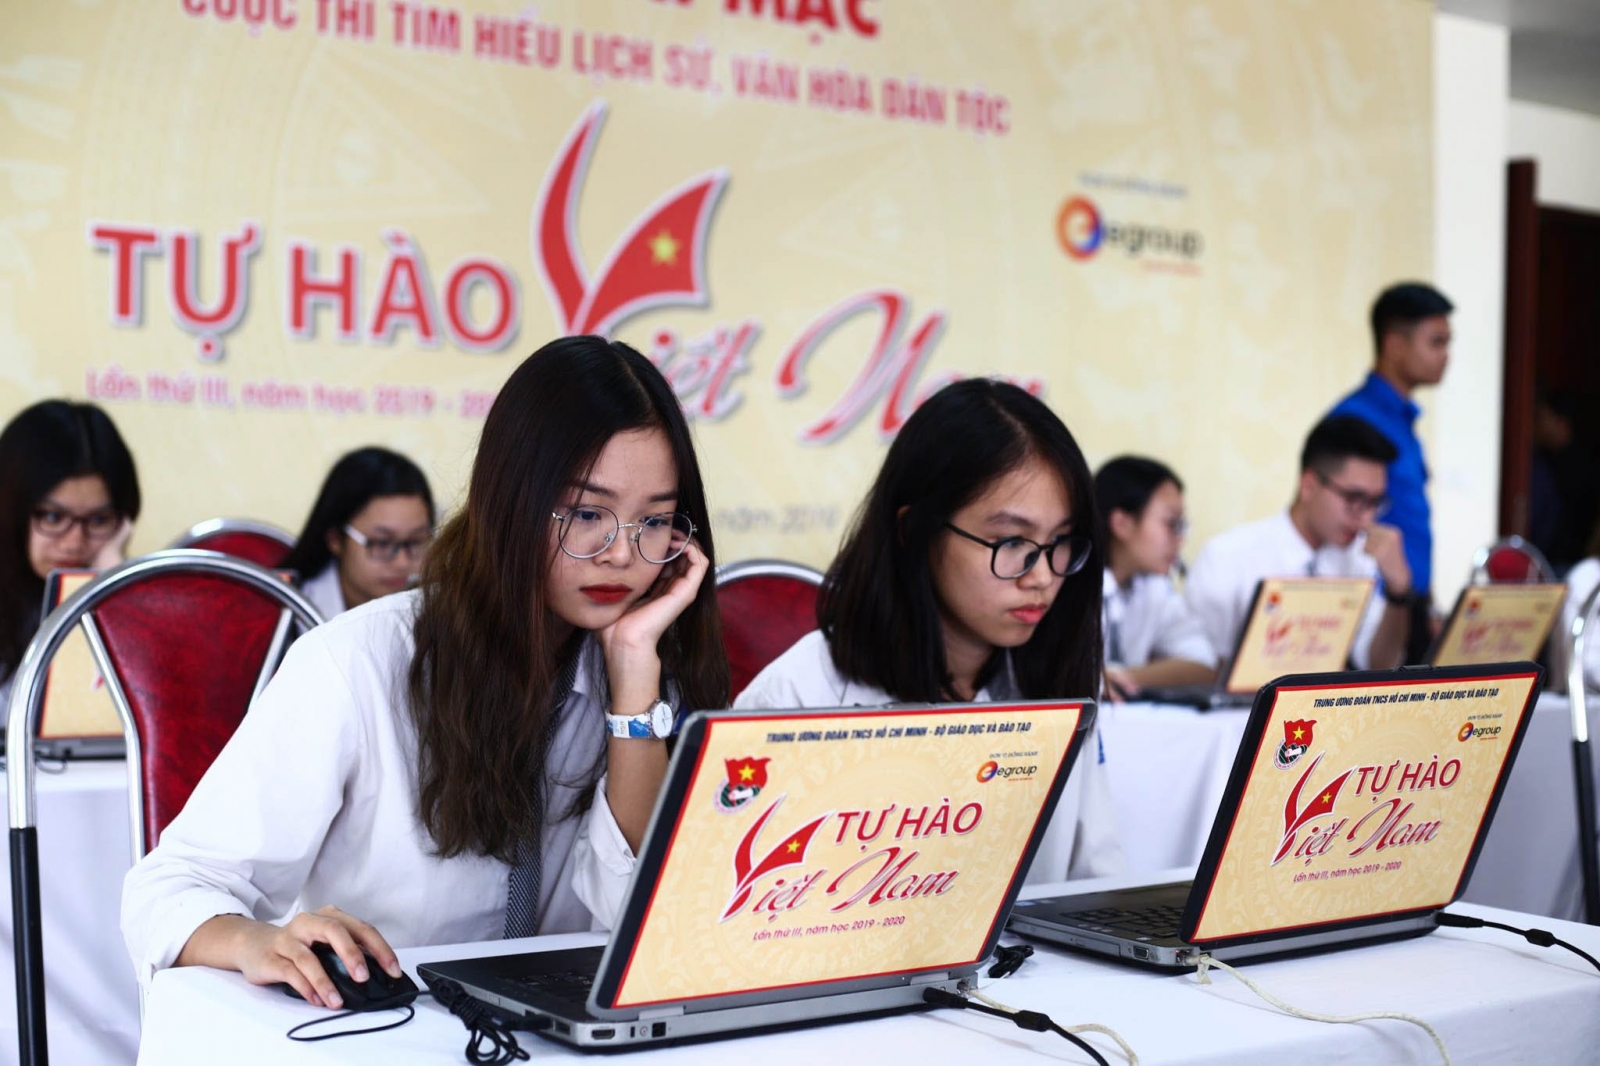 Thi tìm hiểu lịch sử, văn hóa dân tộc trên ứng dụng “Thanh niên Việt Nam”